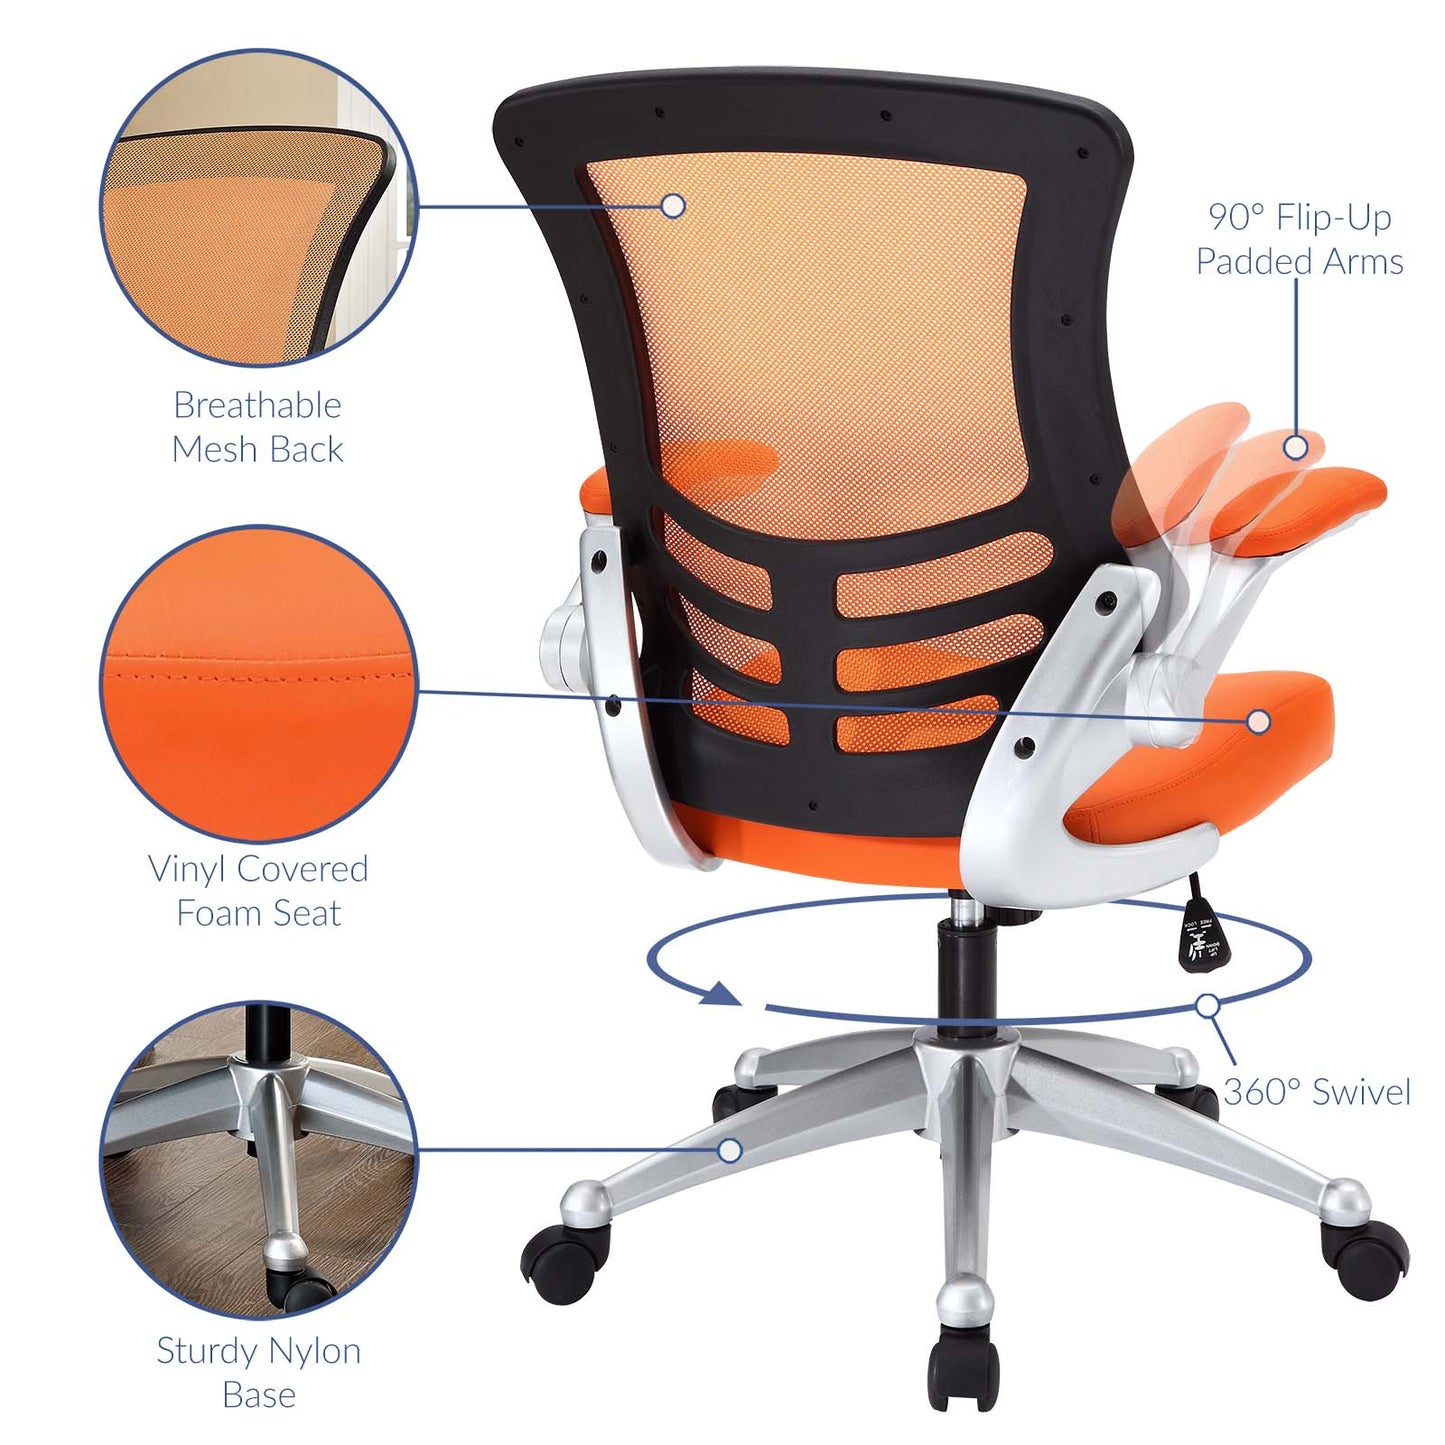 Attainment Office Chair Orange EEI-210-ORA